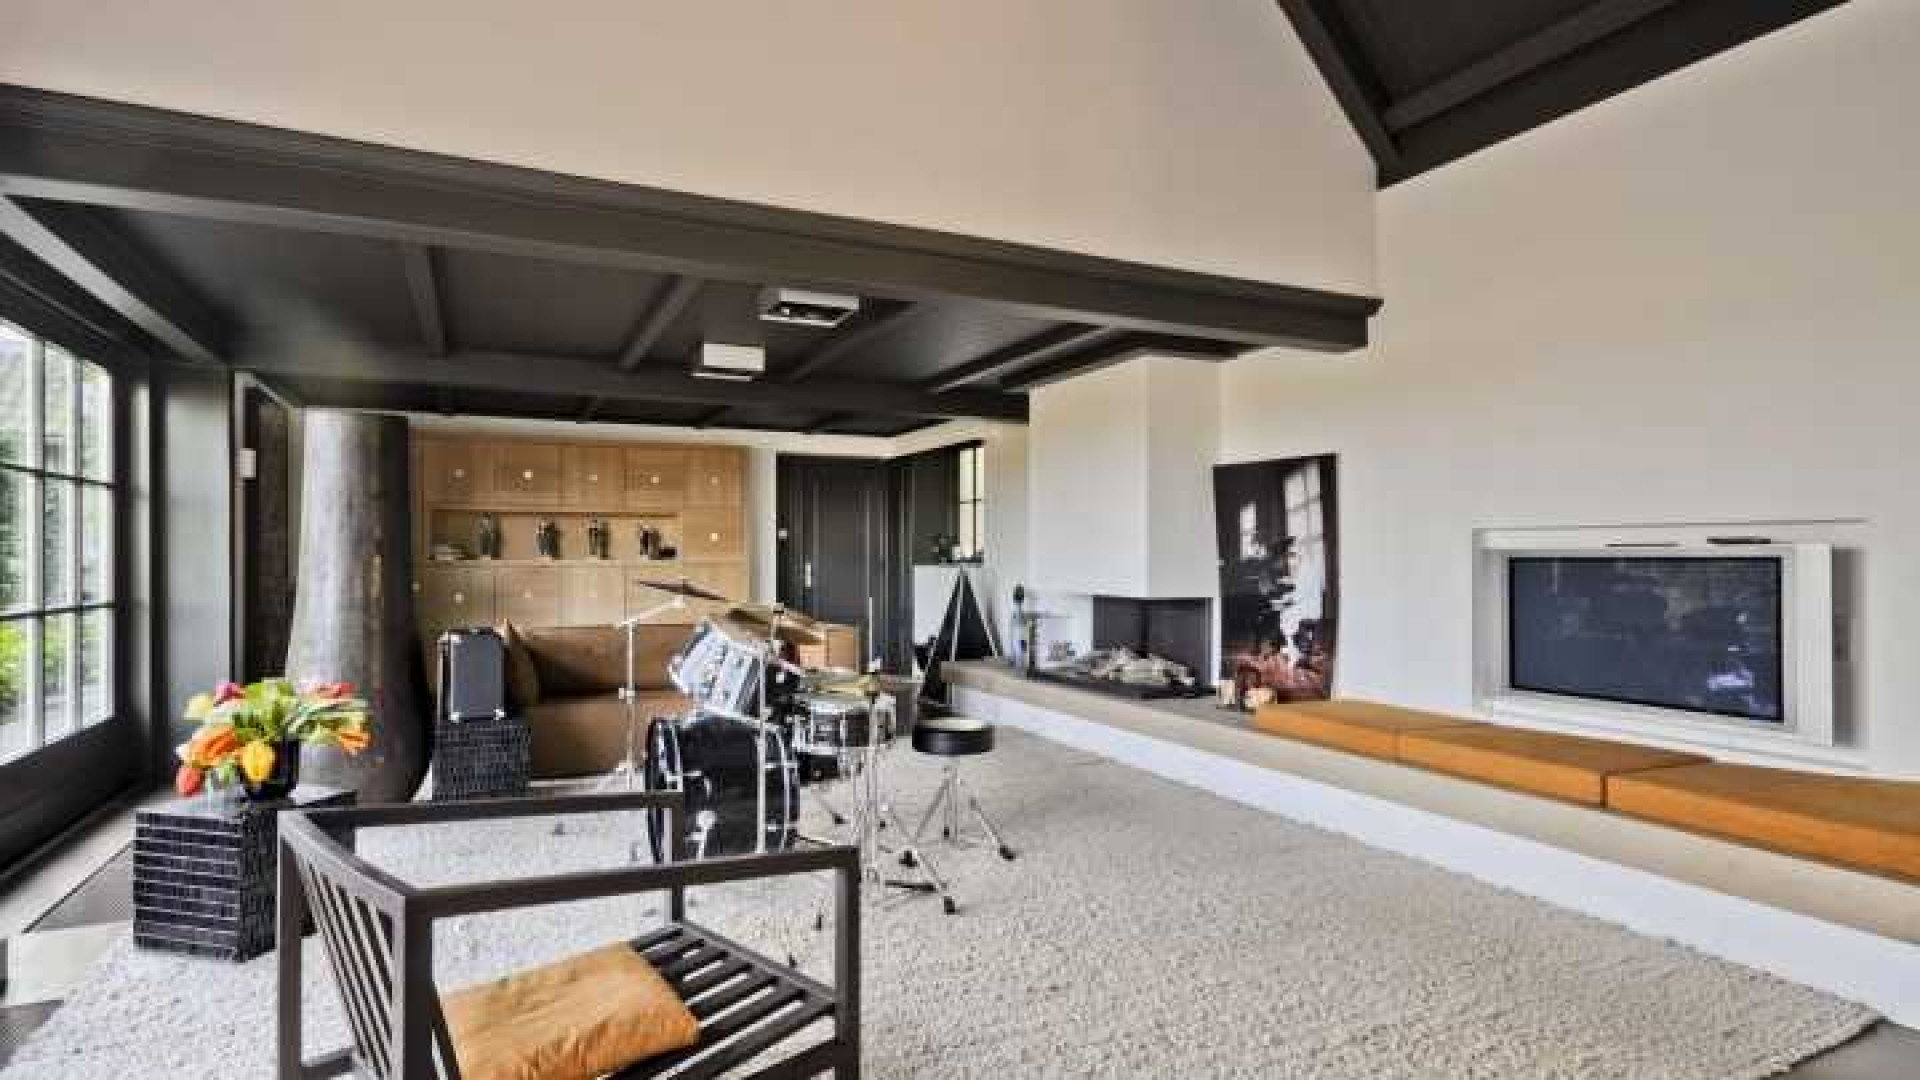 Henny Huisman verkoopt zijn villa zwaar onder de vraagprijs. Zie foto's 19